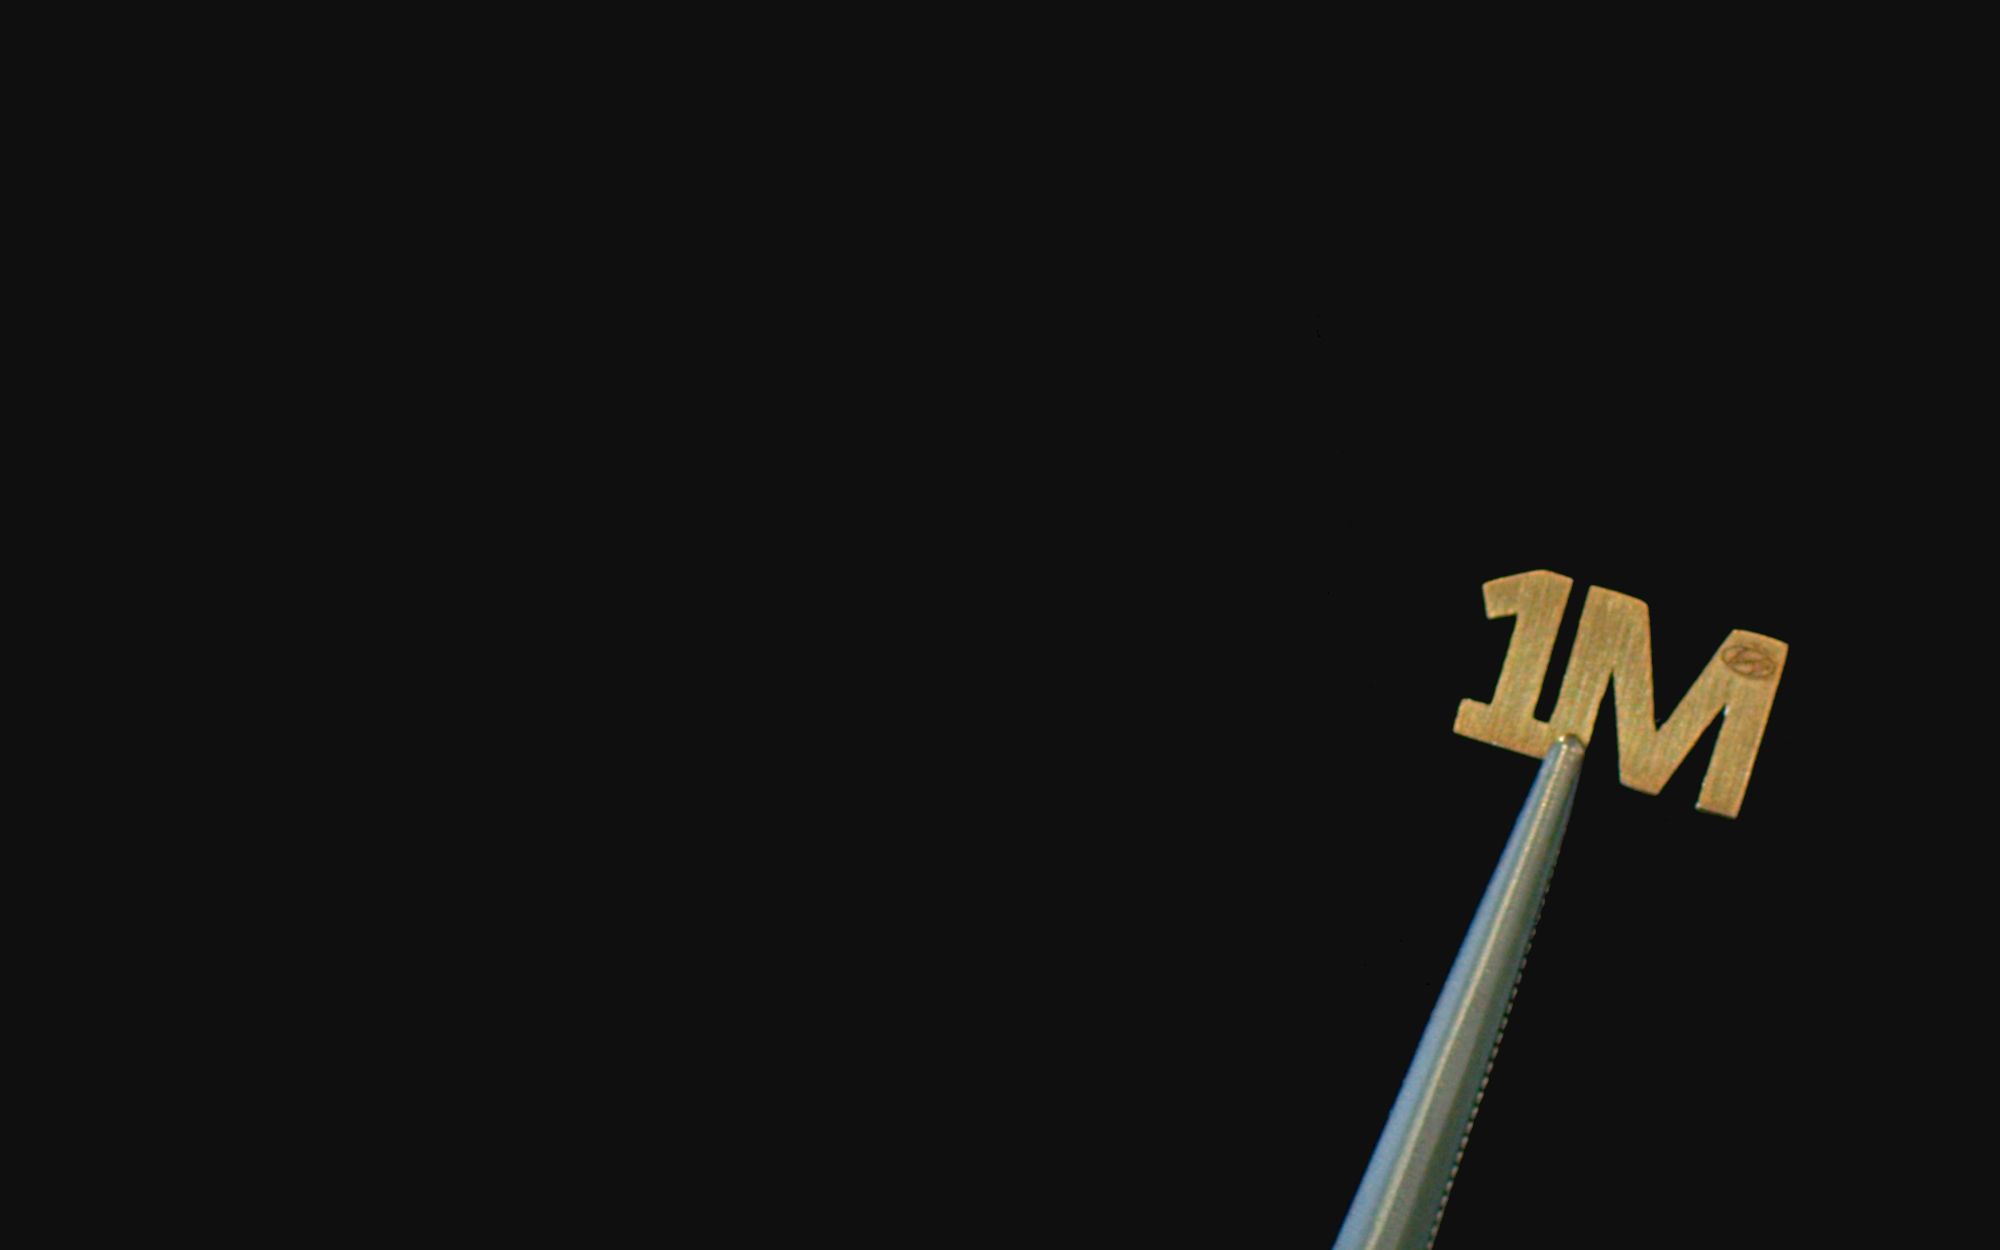 주행 기록계에 부착하는 밀리언 마일 클럽 골드 엠블럼과 골드 번호판 프레임을 받는 엘란트라 오너, 파라 헤인즈